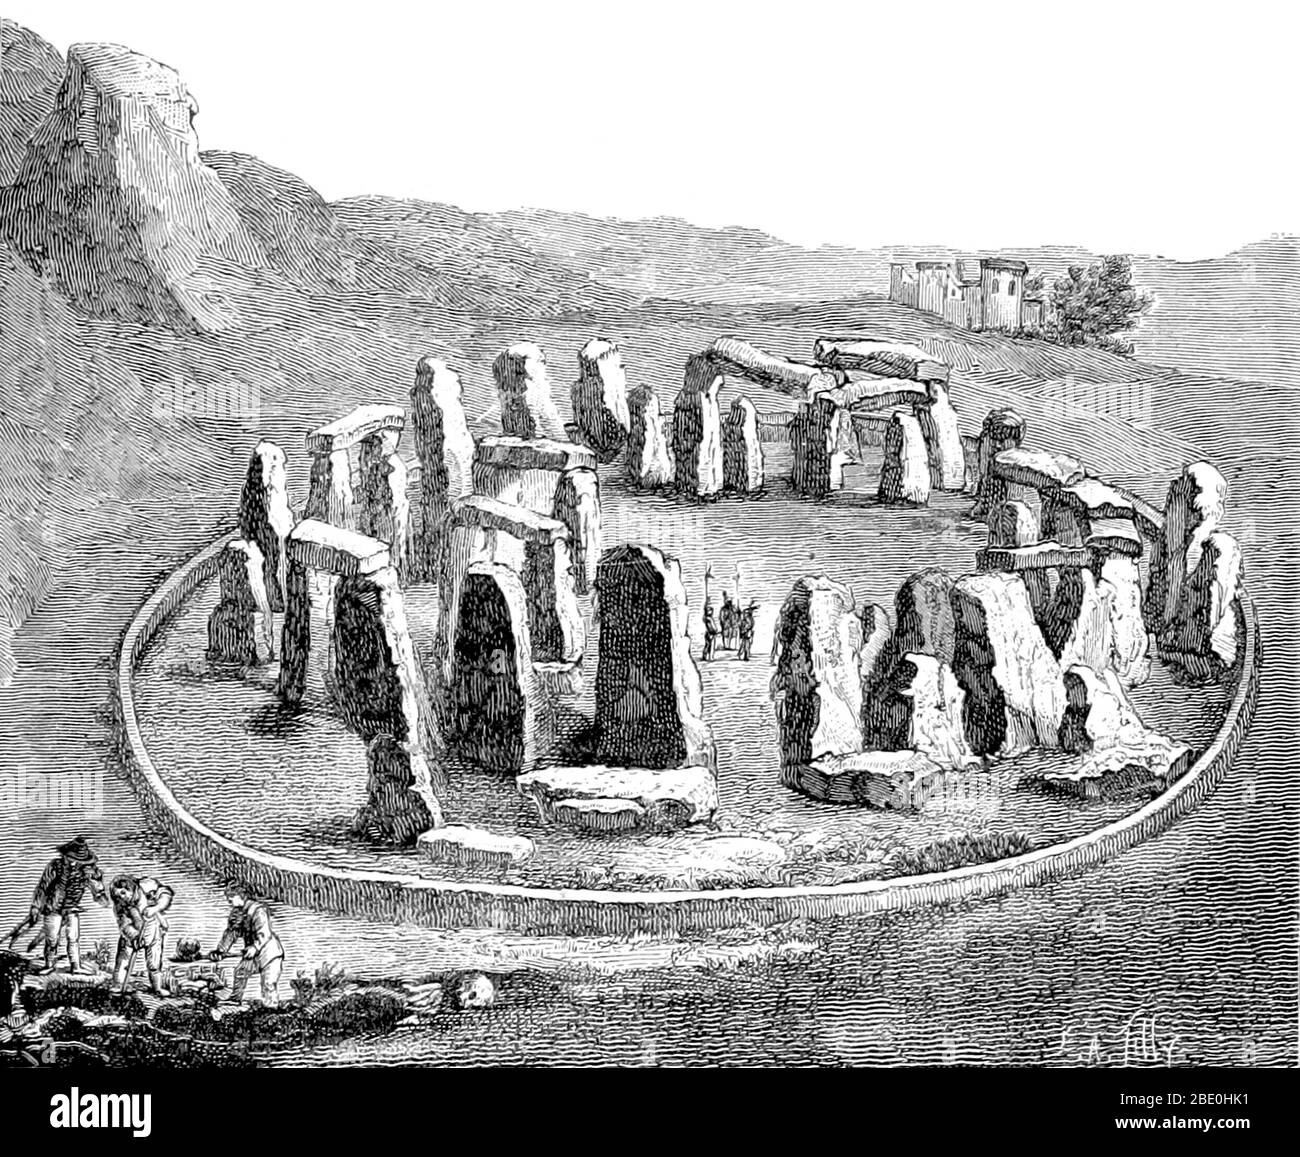 Stonehenge ist ein prähistorisches Denkmal in Wiltshire, England. Stonehenge ist eine der berühmtesten Stätten der Welt und die Überreste eines Ringes aus stehenden Steinen, die in Erdarbeiten errichtet wurden. Es liegt inmitten des dichtesten Komplexes von neolithischen und bronzezeitlichen Denkmälern in England, einschließlich mehrerer hundert Grabhügel. Archäologische Beweise deuten darauf hin, dass Stonehenge von seinen frühesten Anfängen ein Grabplatz gewesen sein könnte. Die Stätte und ihre Umgebung wurden 1986 in die Liste des Weltkulturerbes der UNESCO aufgenommen. Bild aufgenommen von Seite 521 von 'La création de l'homme et les premiers âges de Stockfoto